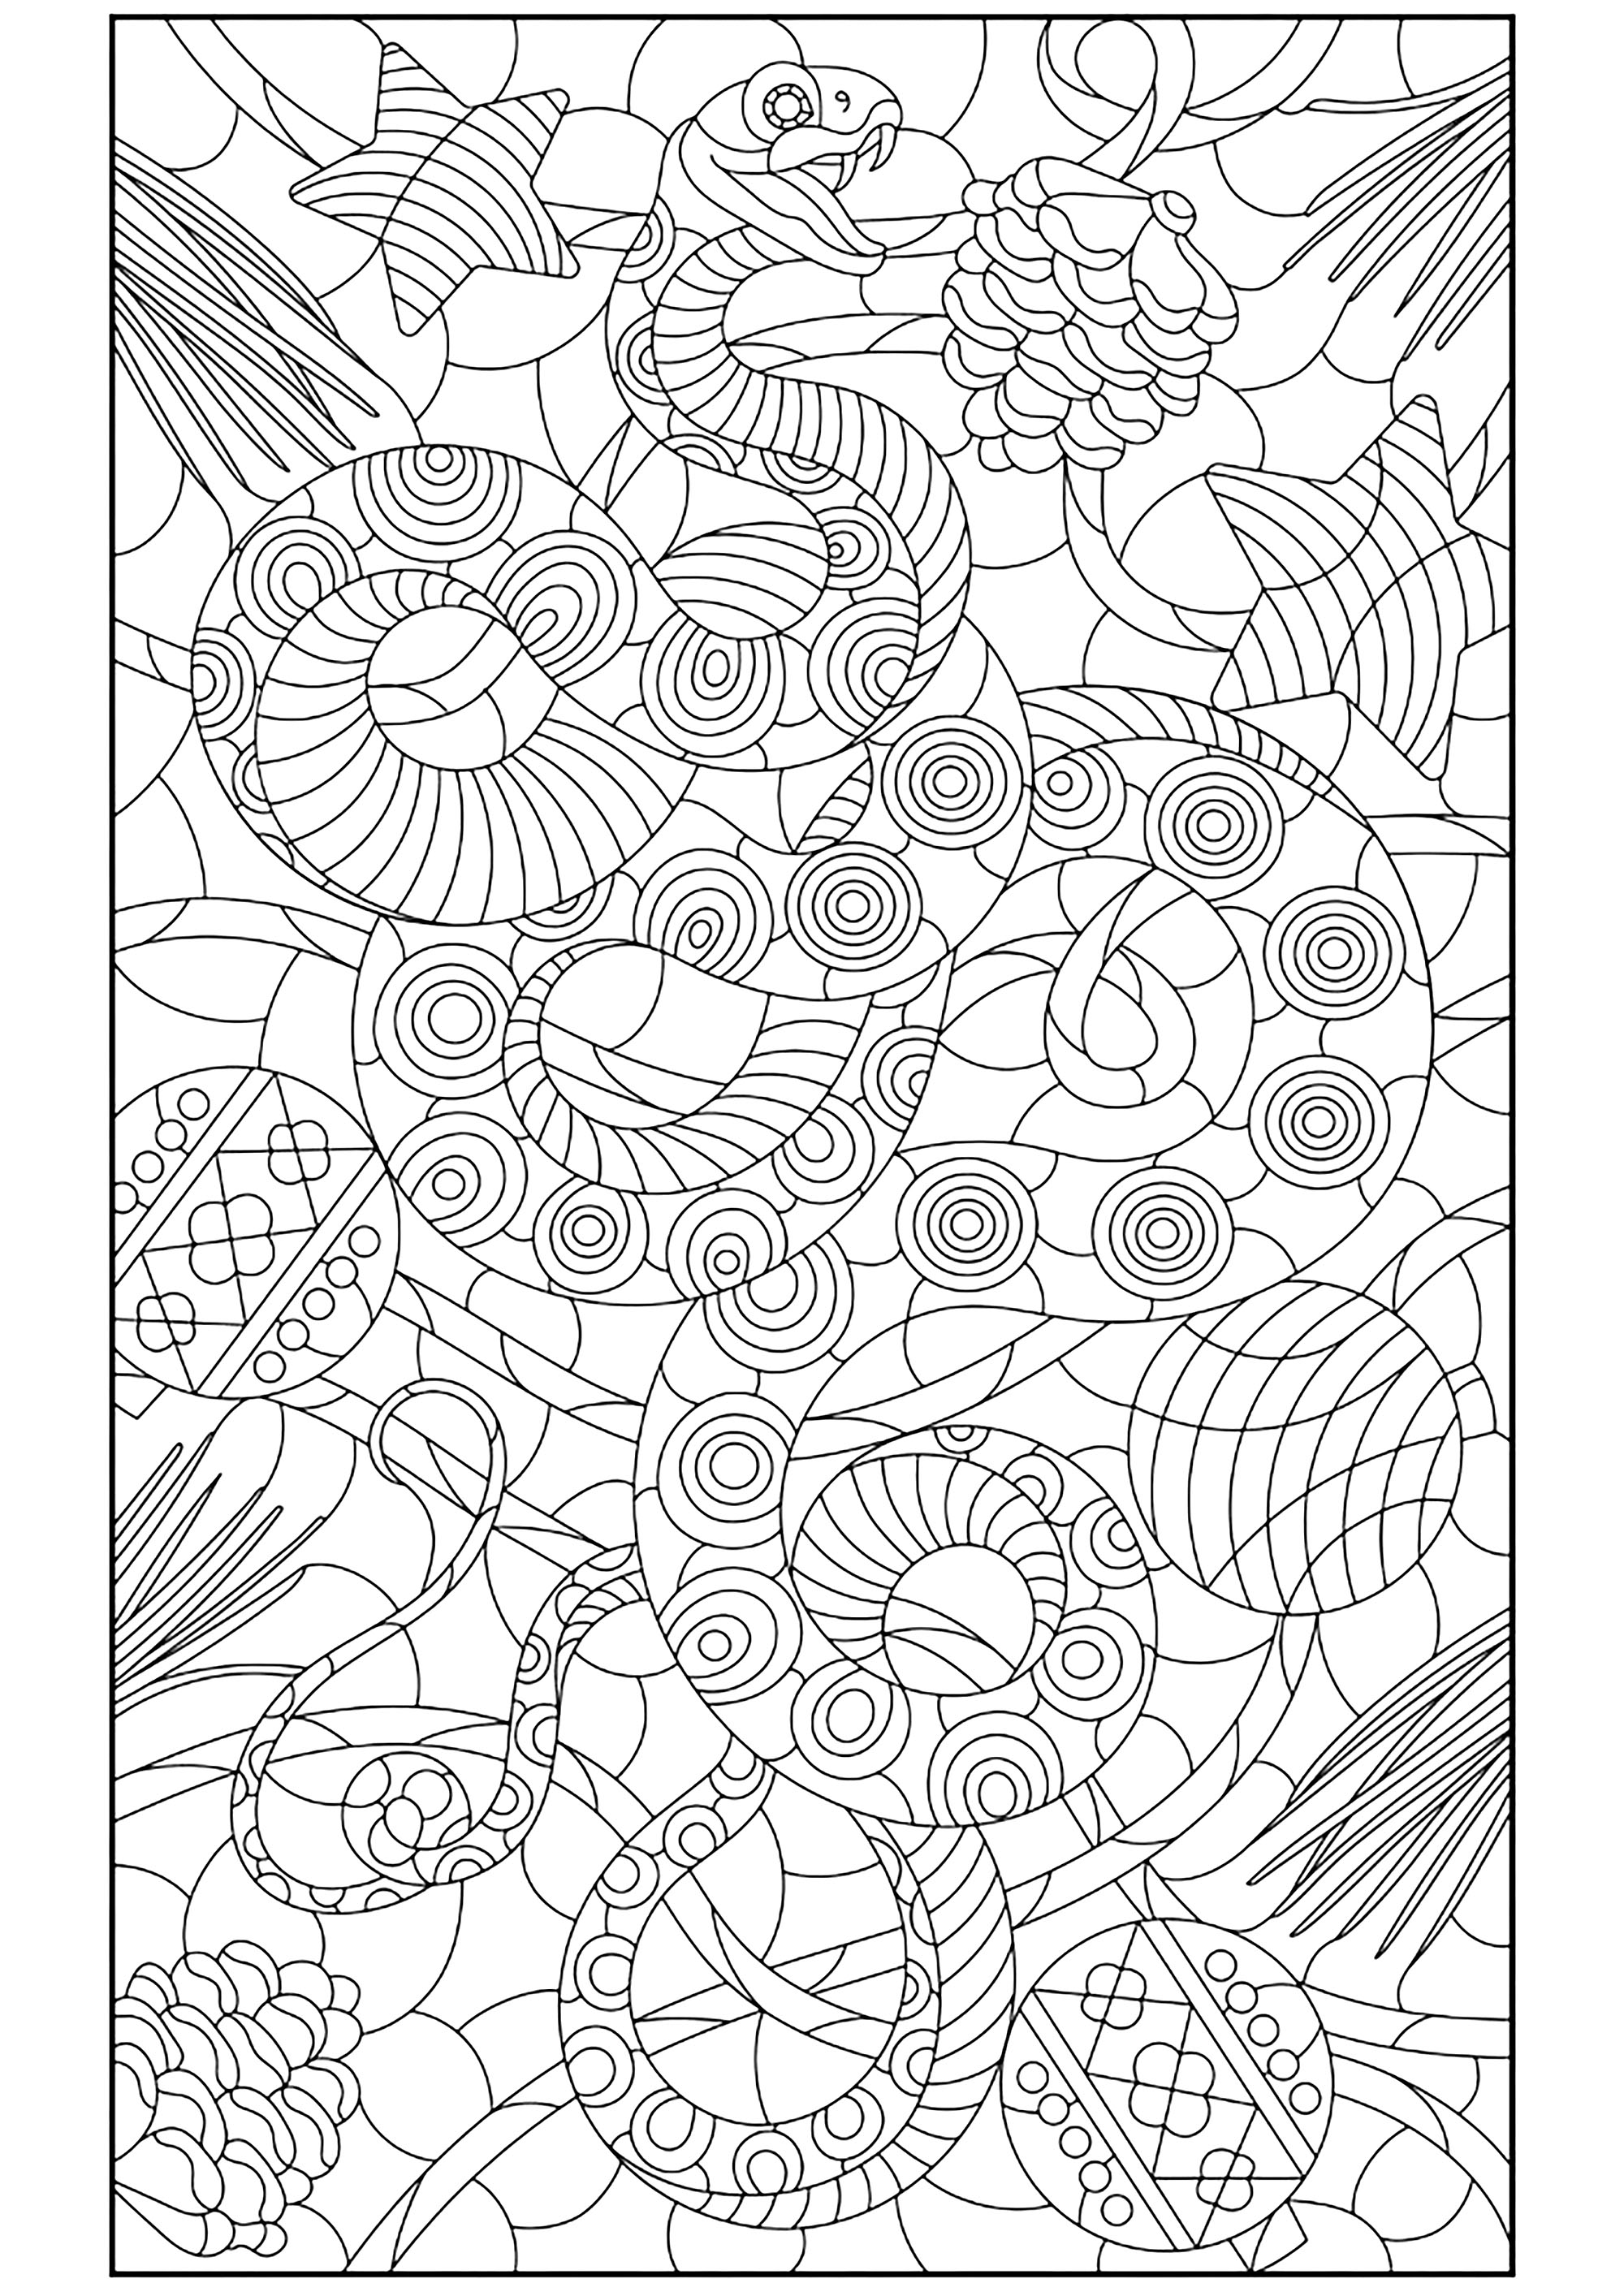 Cobra e padrões diversificados. Uma coloração sublime com um desenho extremamente fino, Fonte : 123rf   Artista : zagory